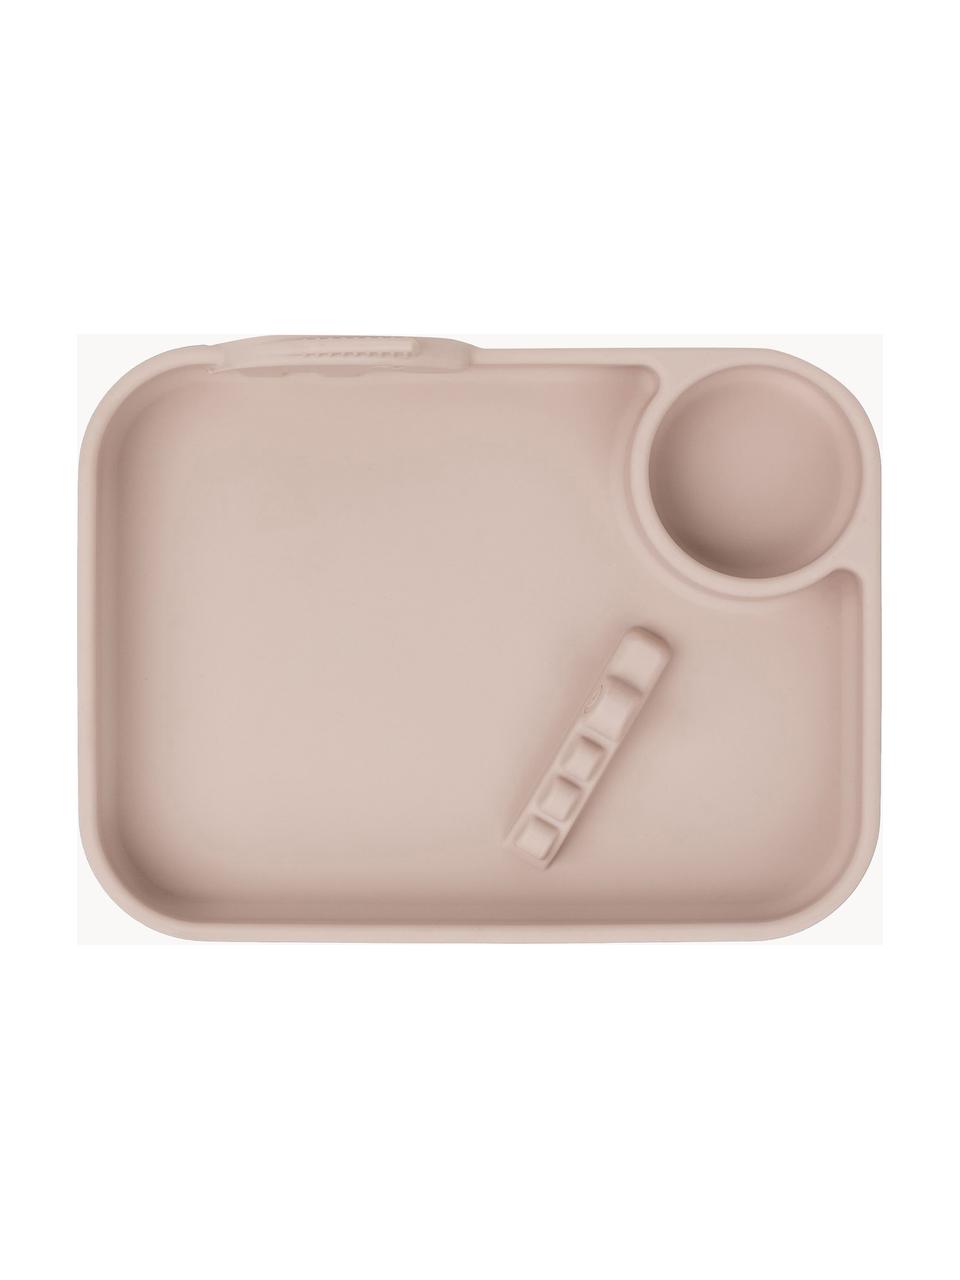 Plato infantil Peekaboo, 100% silicona libre de BPA, Rosa pálido, An 22 x Al 5 cm